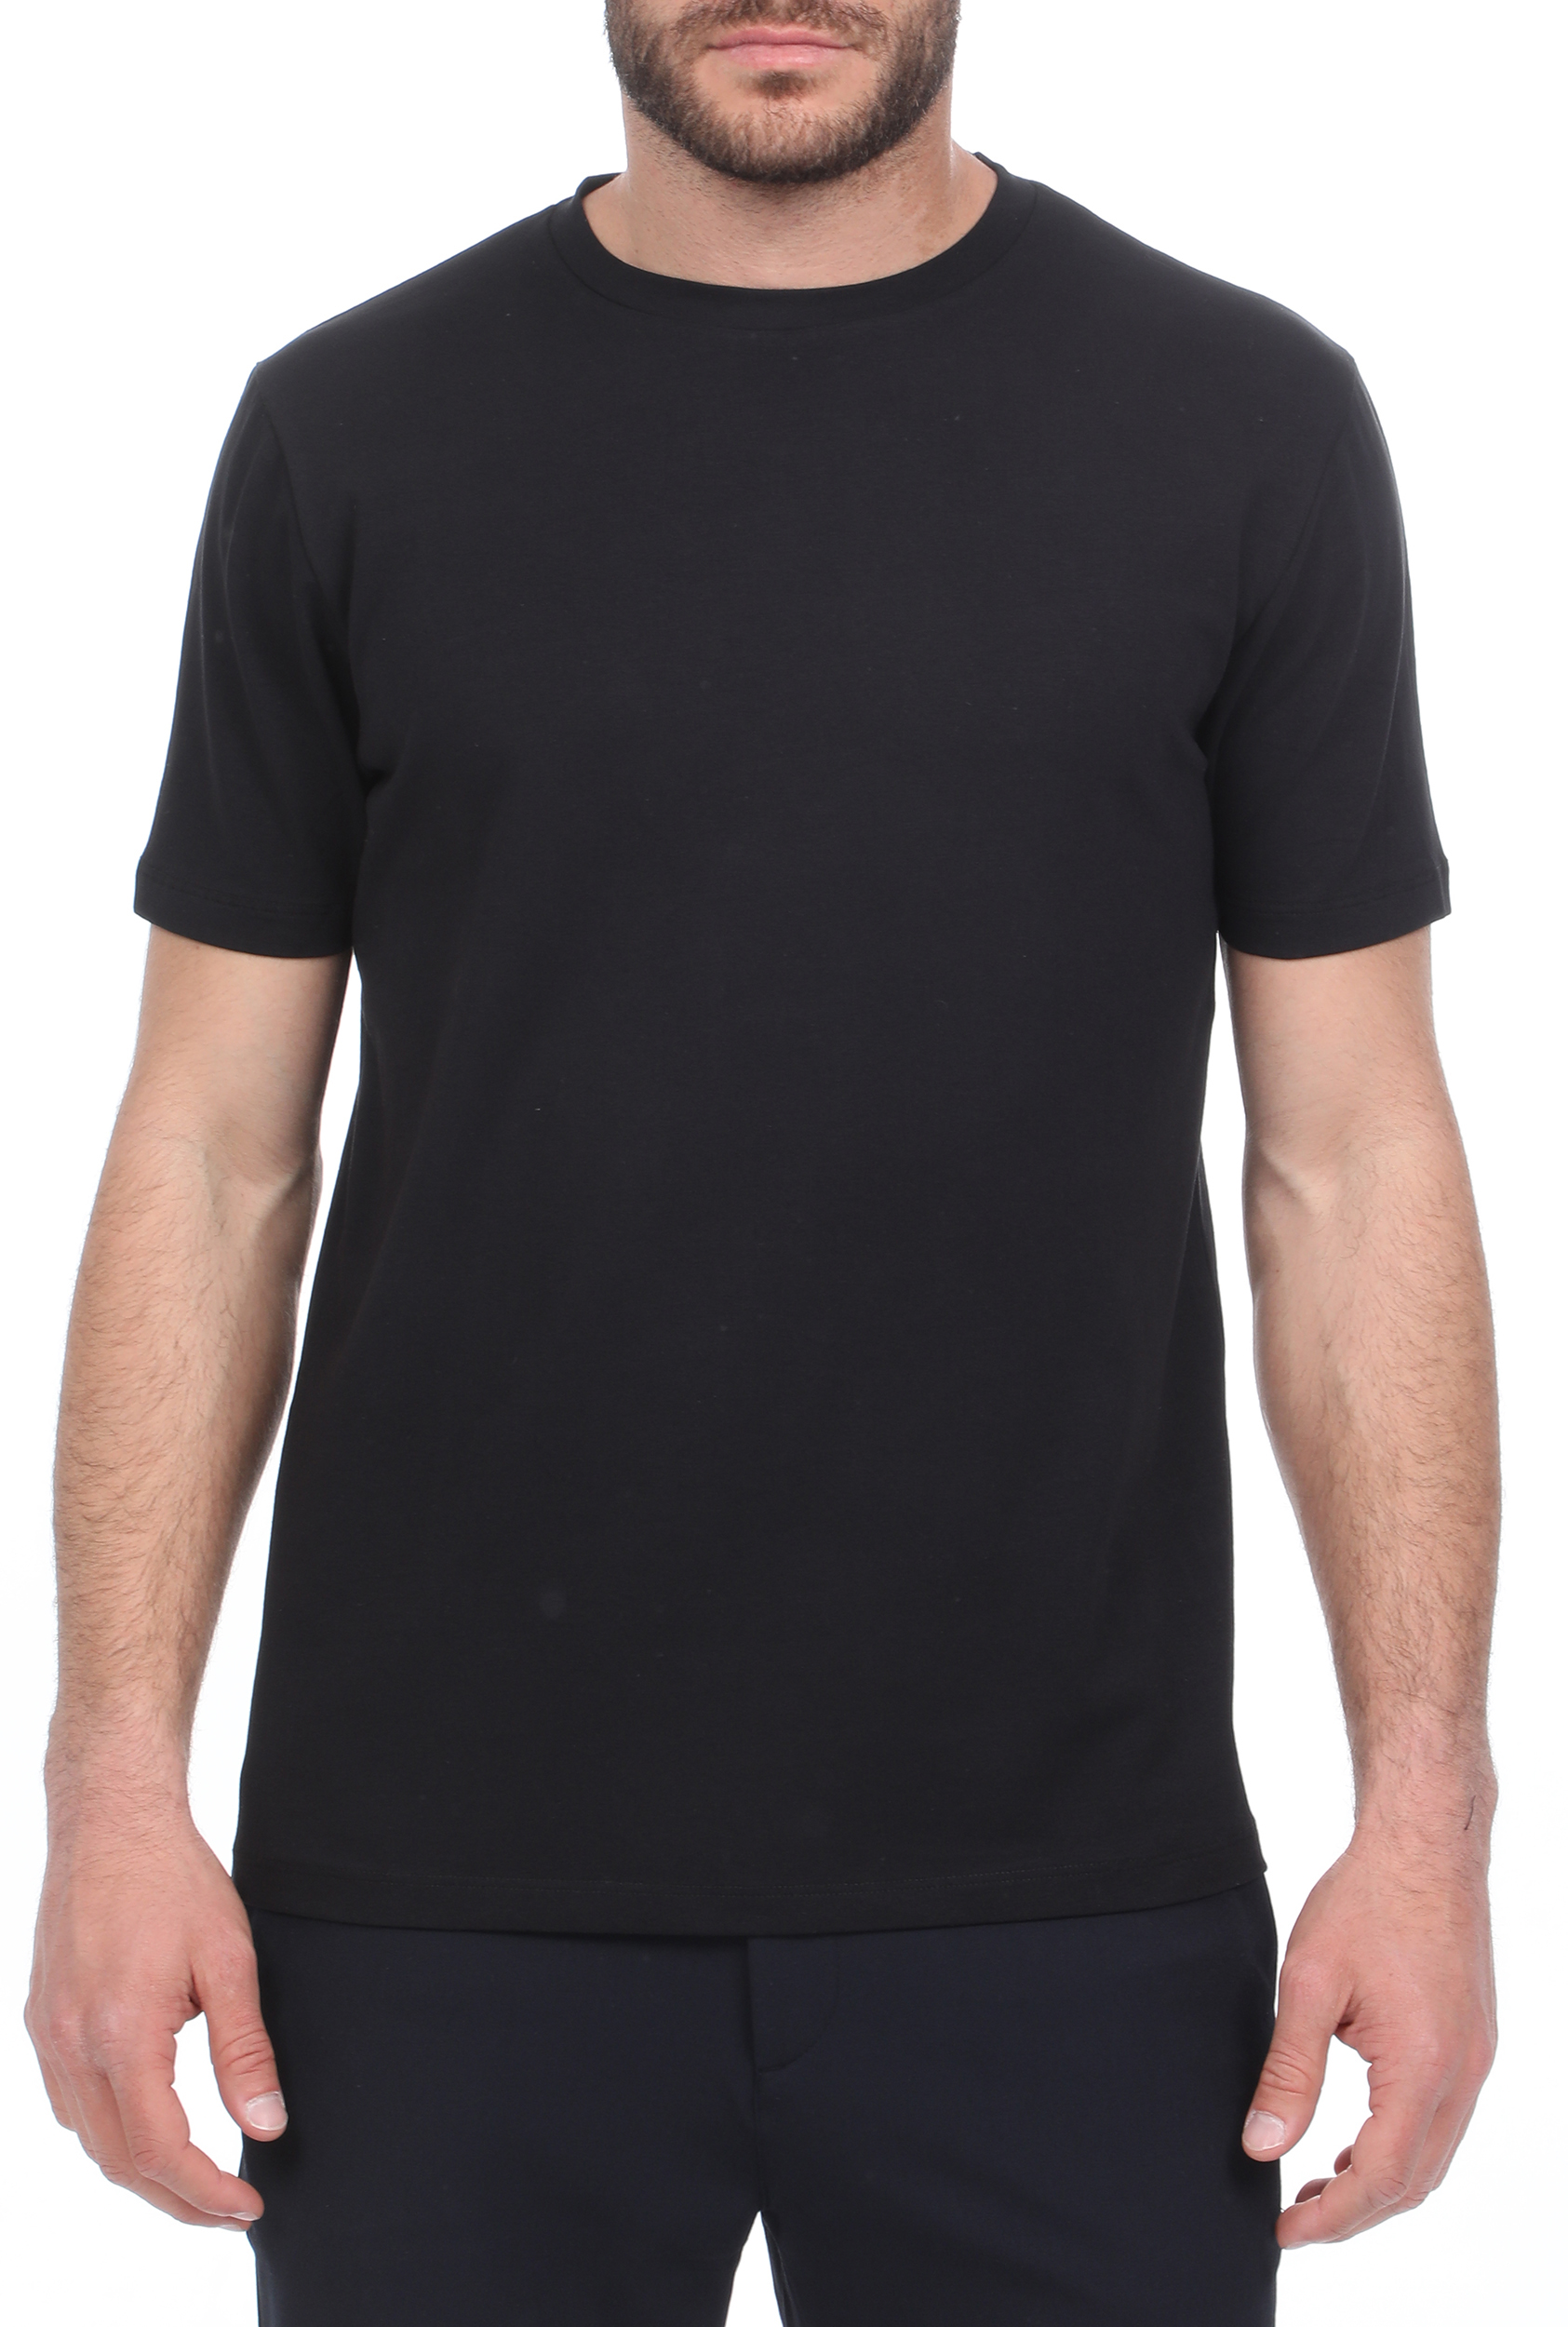 Ανδρικά/Ρούχα/Μπλούζες/Κοντομάνικες SSEINSE - Ανδρικό t-shirt SSEINSE μαύρο